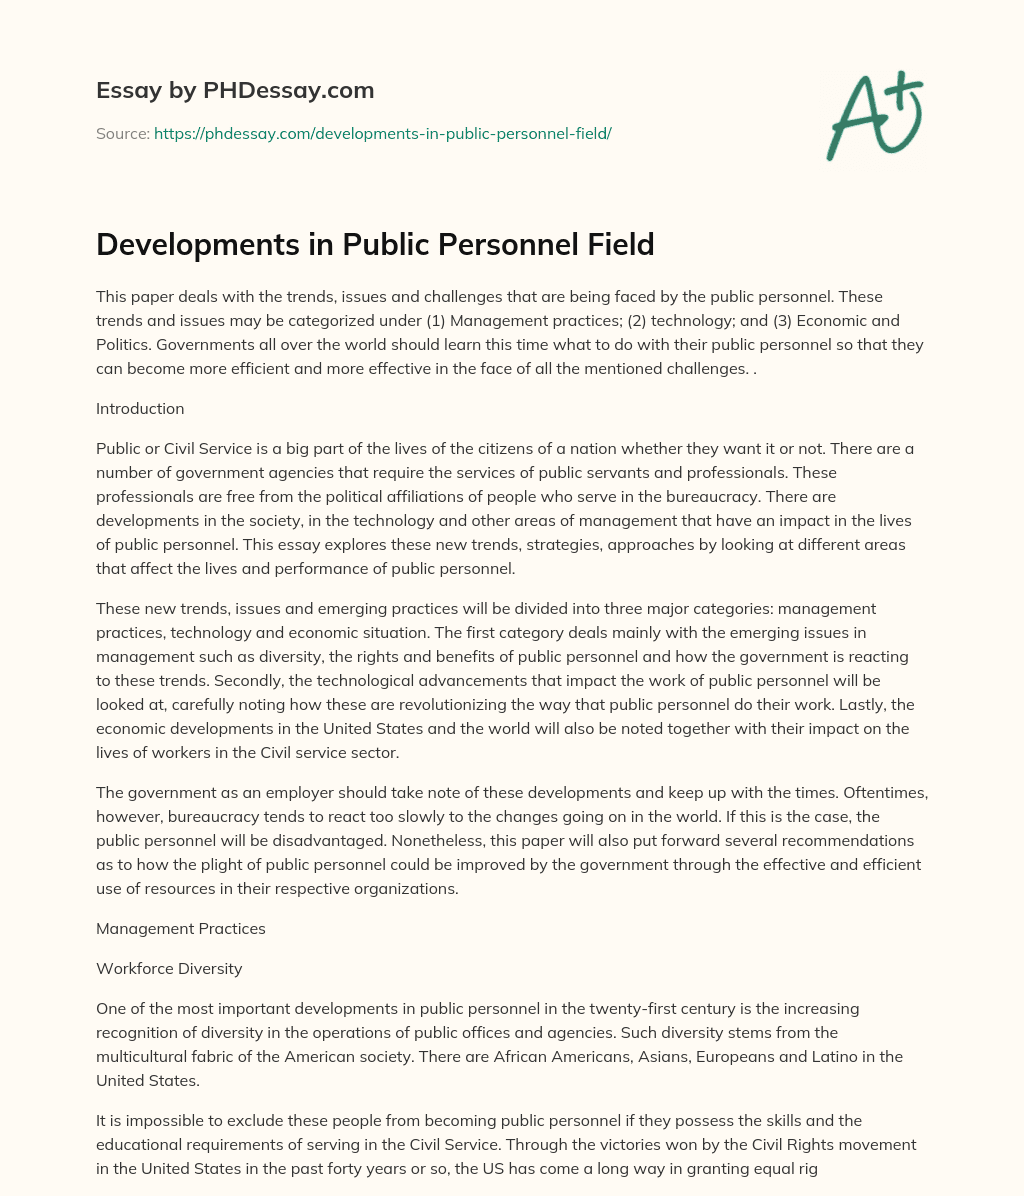 Developments in Public Personnel Field essay